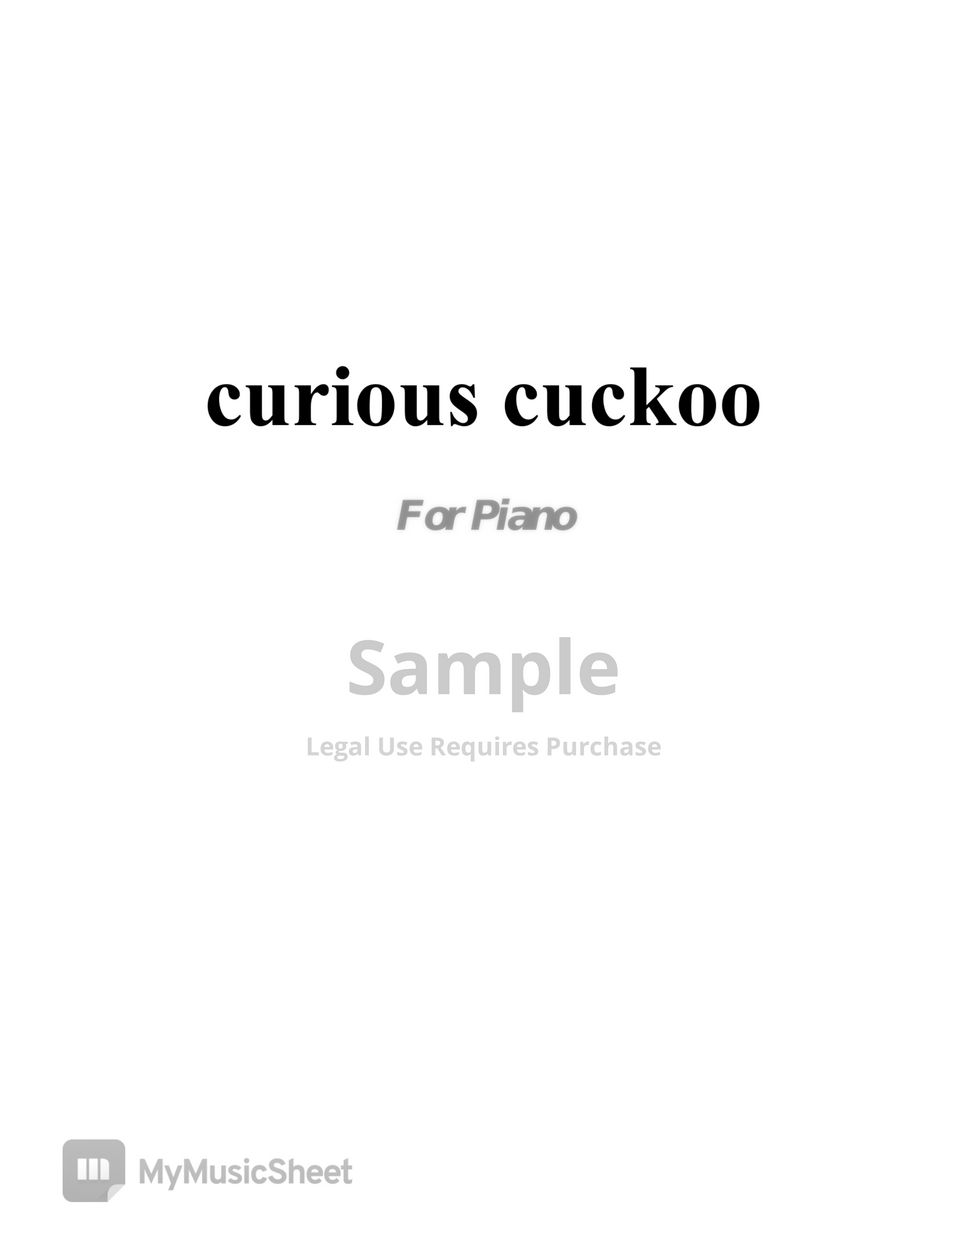 Heeyoung Yang - curious cuckoo for piano (Sae Taryeong)